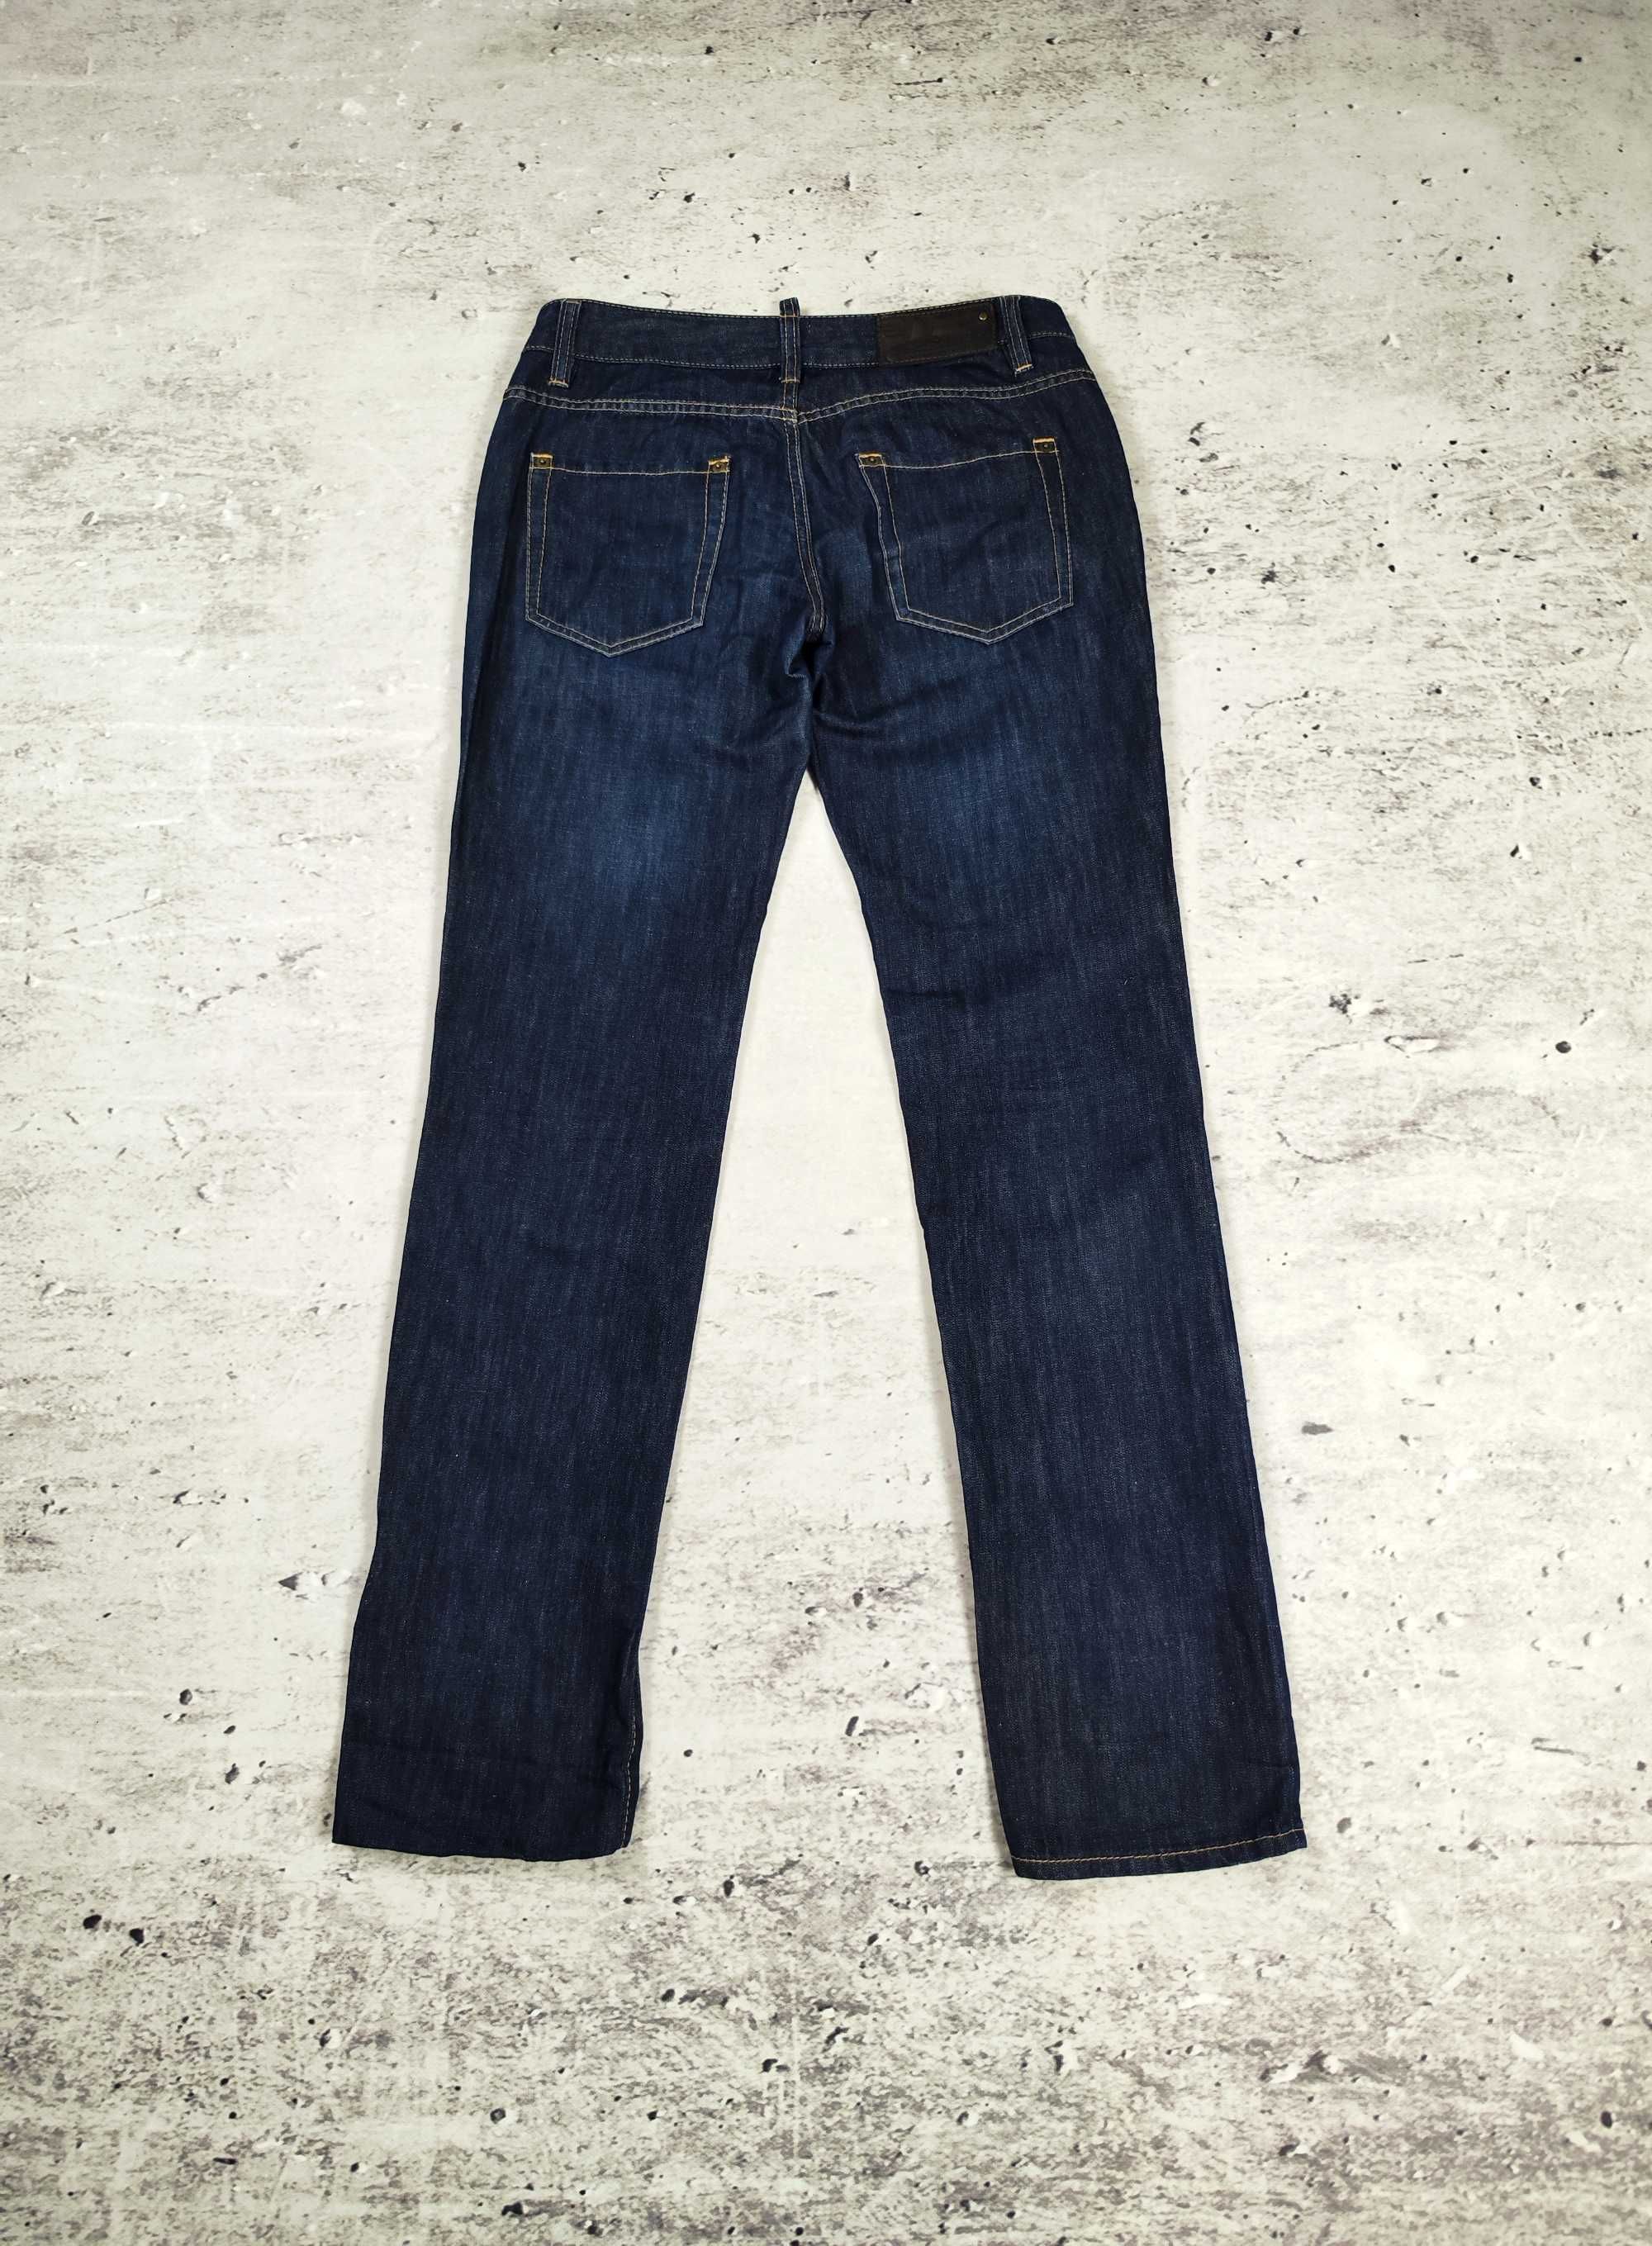 Spodnie jeansowe Dsquared2 męskie oryginał basic casual r. M